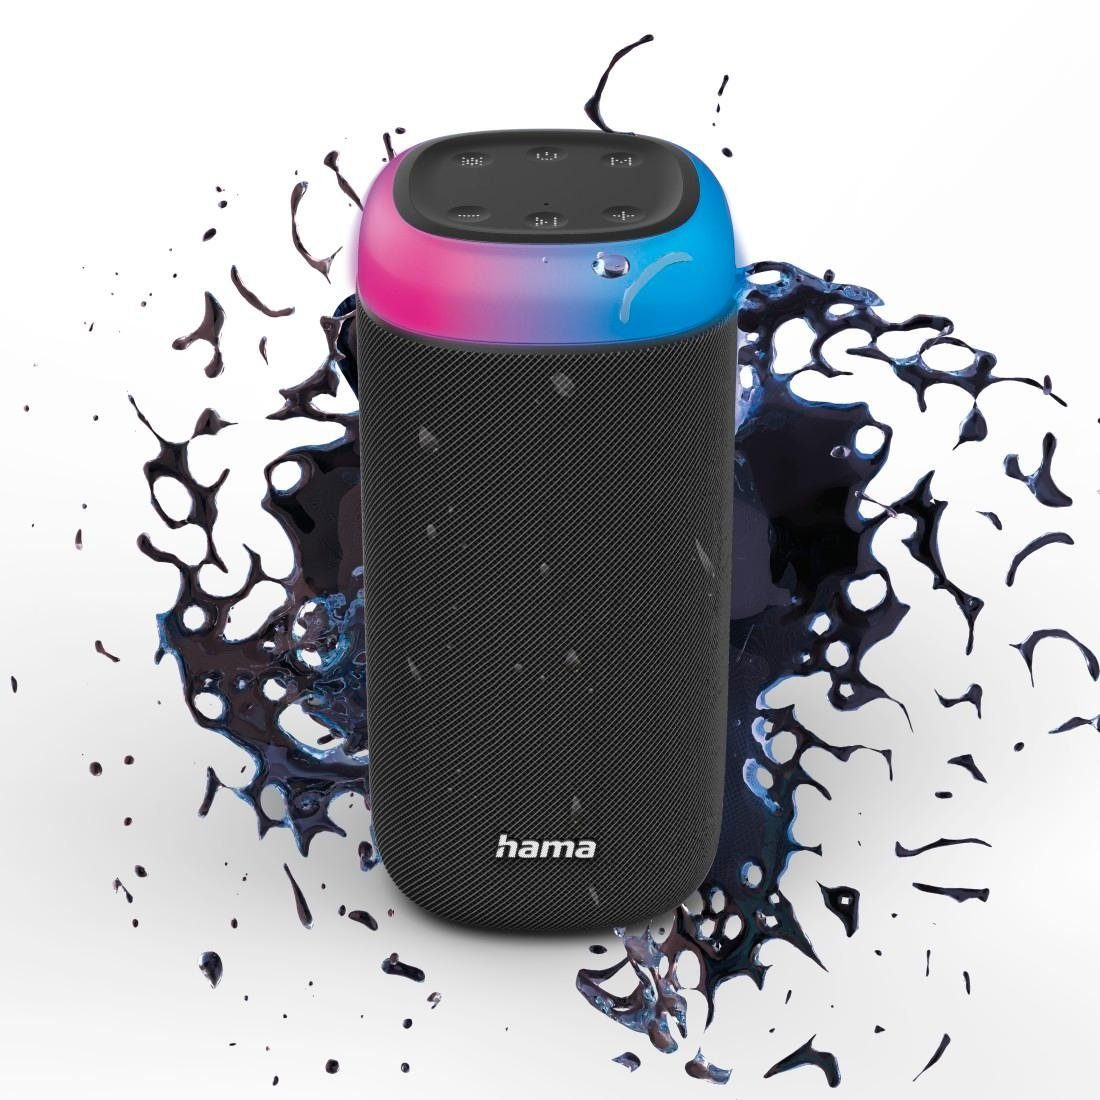 Hama Bluetooth Box LED 30 W Xtra Bass 360ᵒ Sound spritzwassergeschützt  Stereo Bluetooth-Lautsprecher (A2DP Bluetooth, AVRCP Bluetooth, HFP), LED- Beleuchtung, 5 verschiedene Modi, z. B. im Takt der Musik